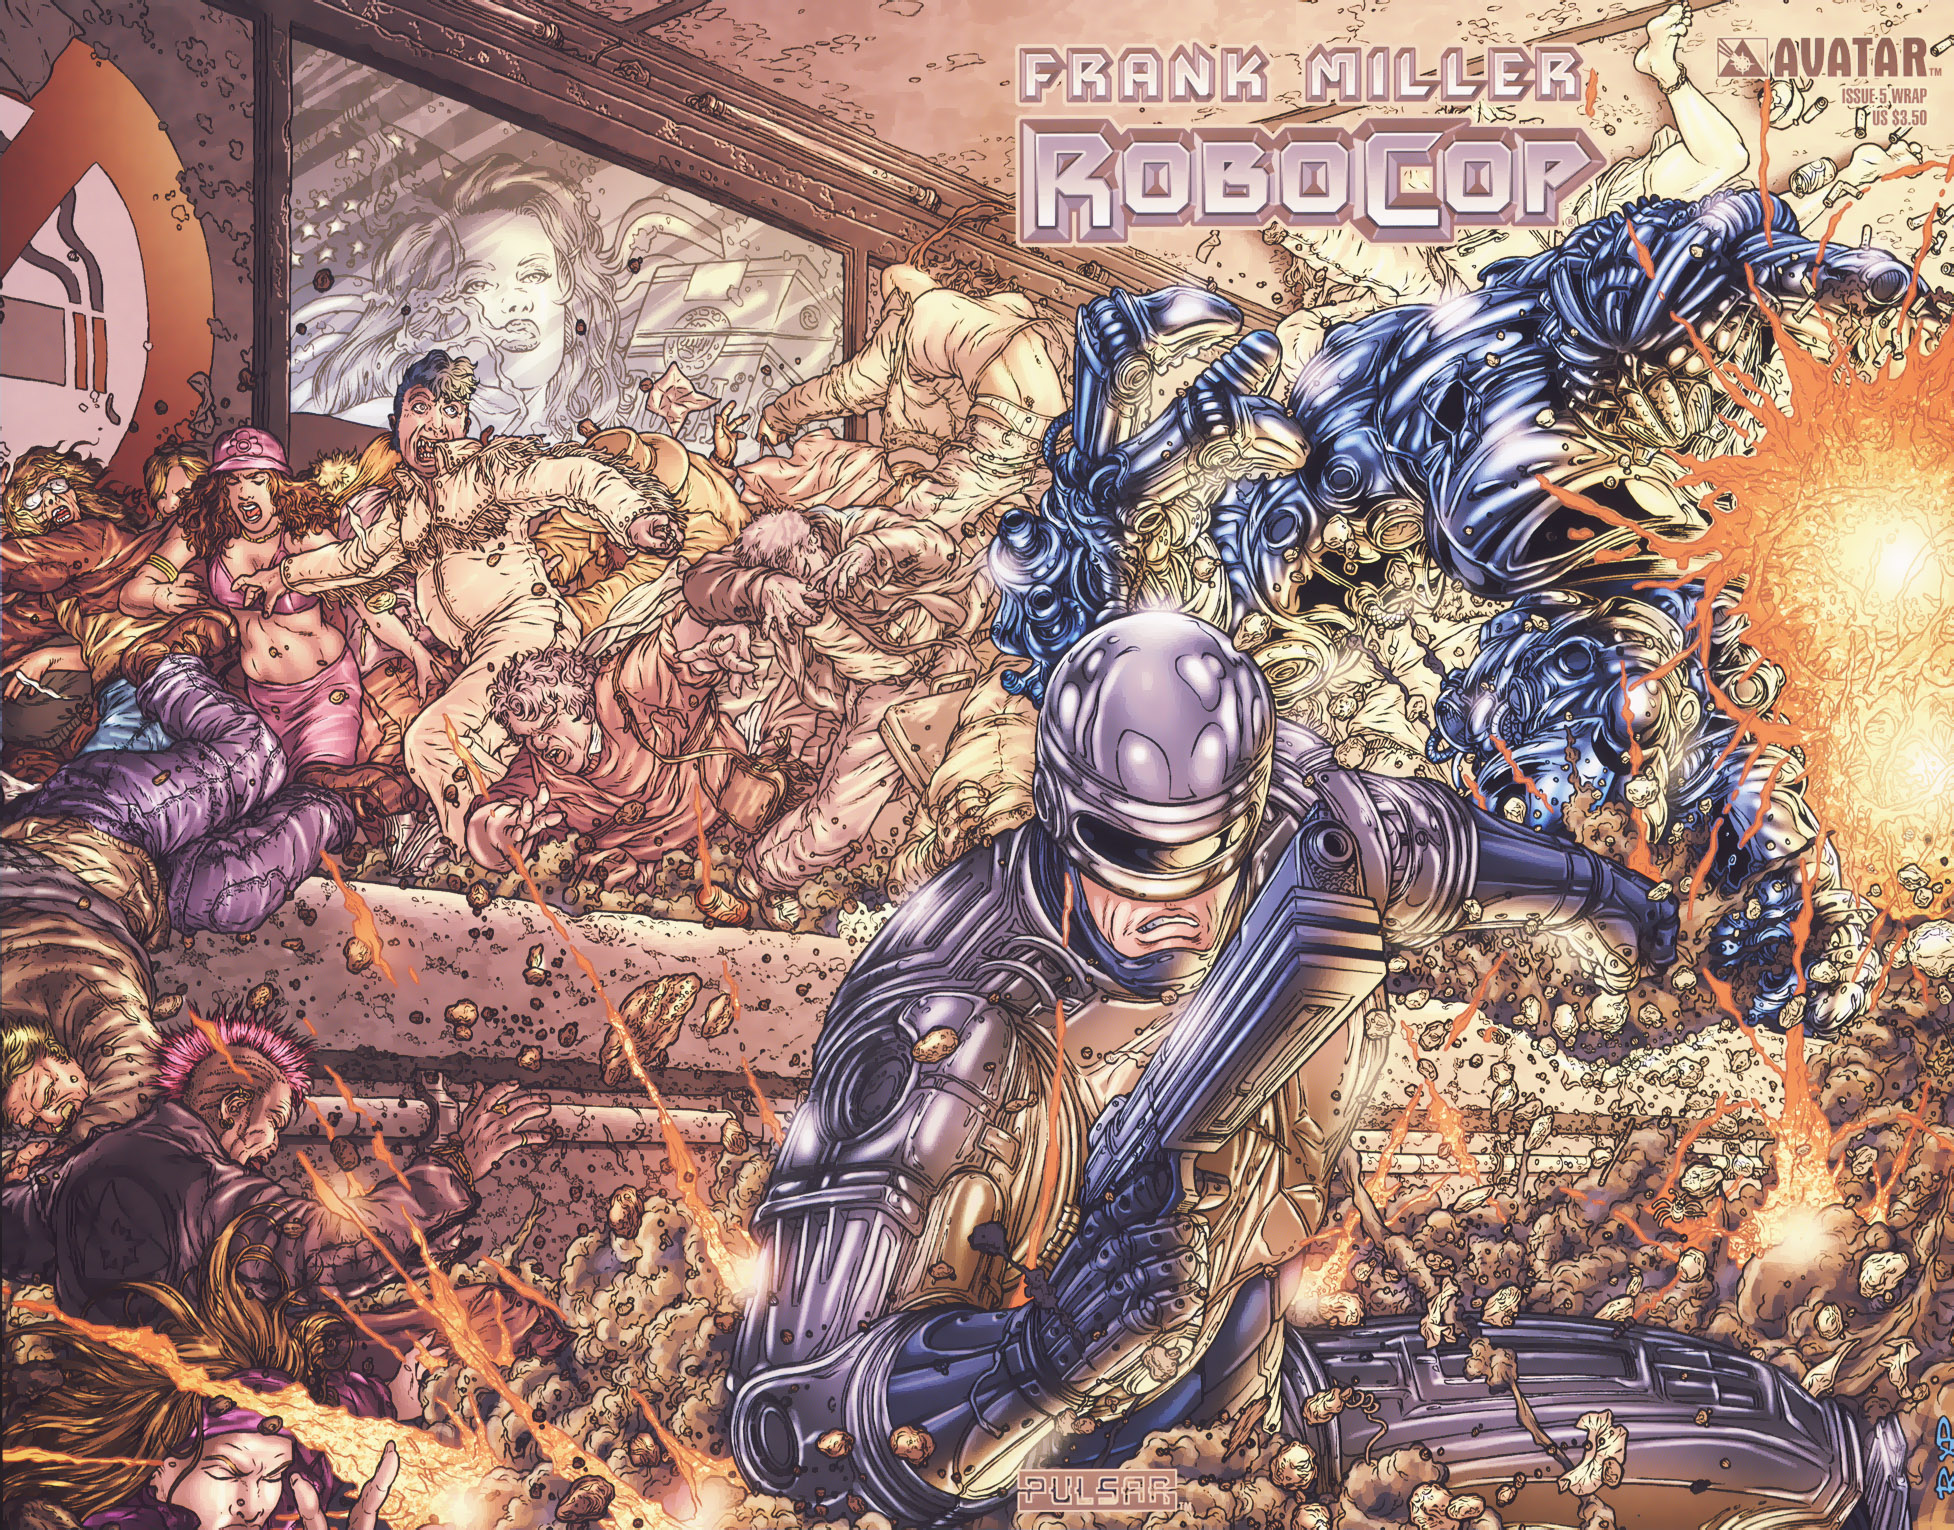 Read online Frank Miller's Robocop comic -  Issue #5 - 1